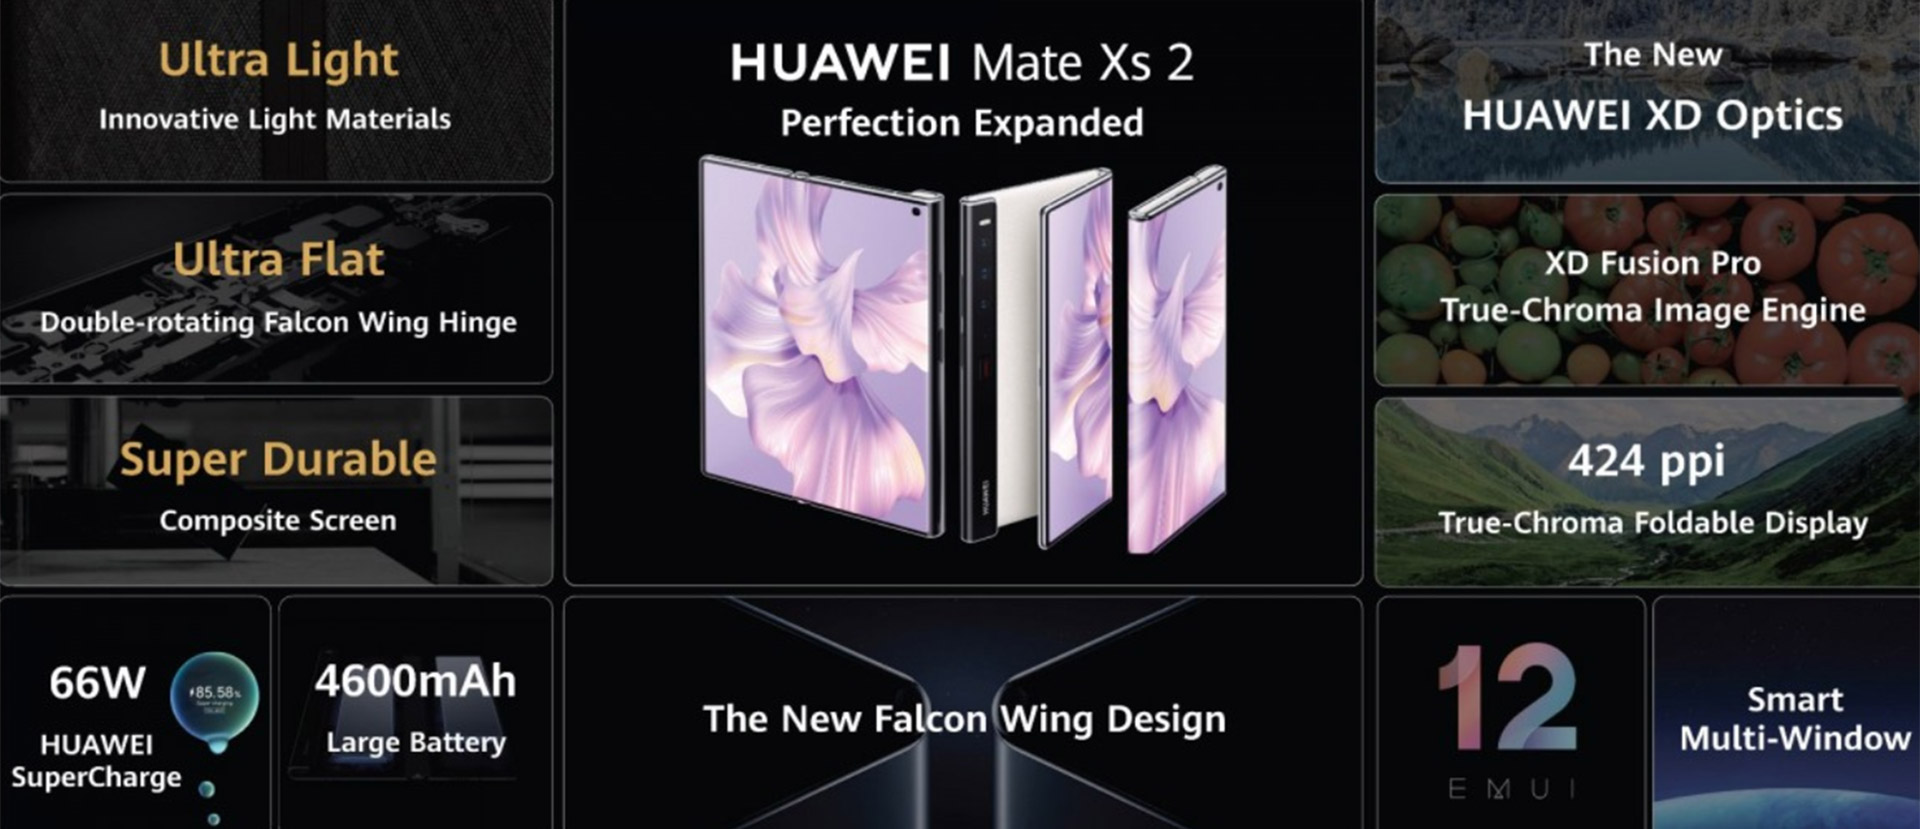 لیست مشخصات Huawei Mate Xs 2